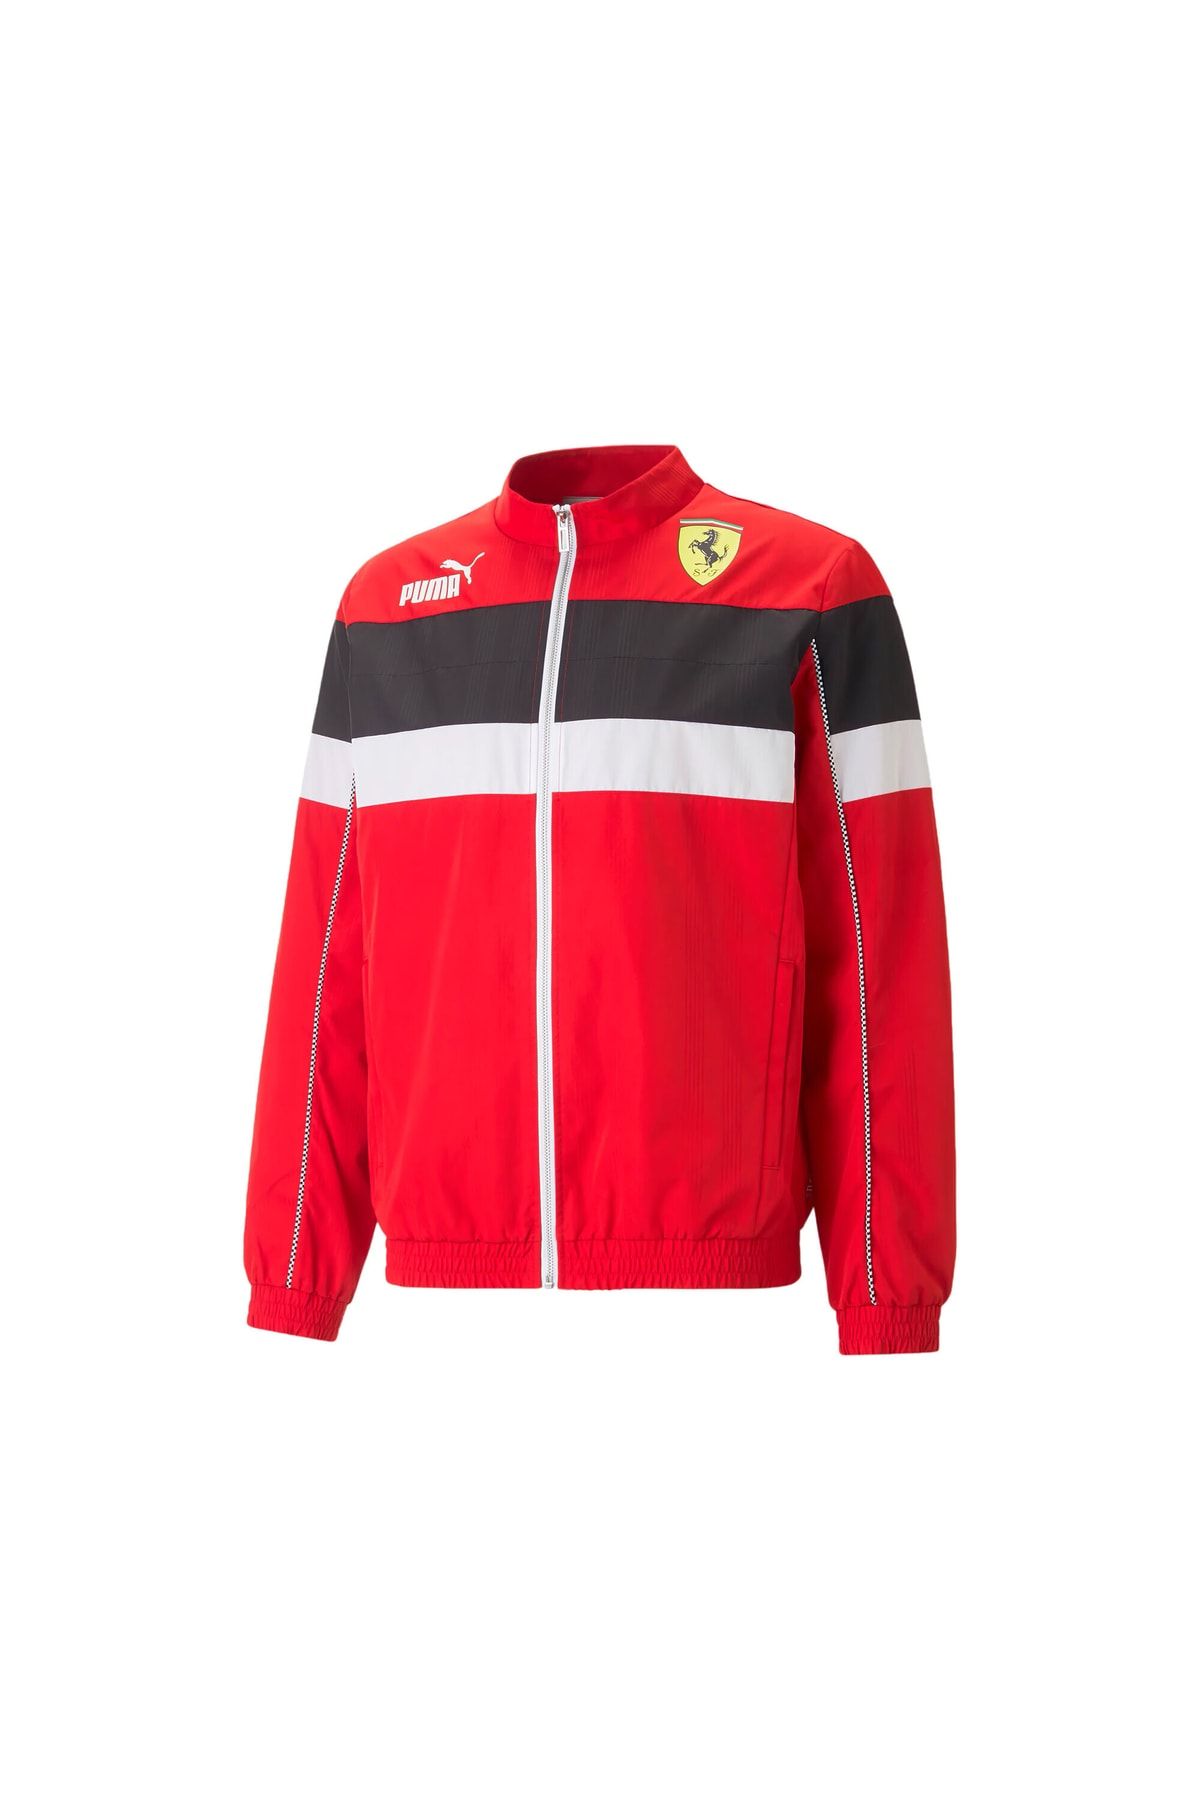 Puma Ferrari Race Sds Jacket Erkek Günlük Ceket 53815702 Kırmızı